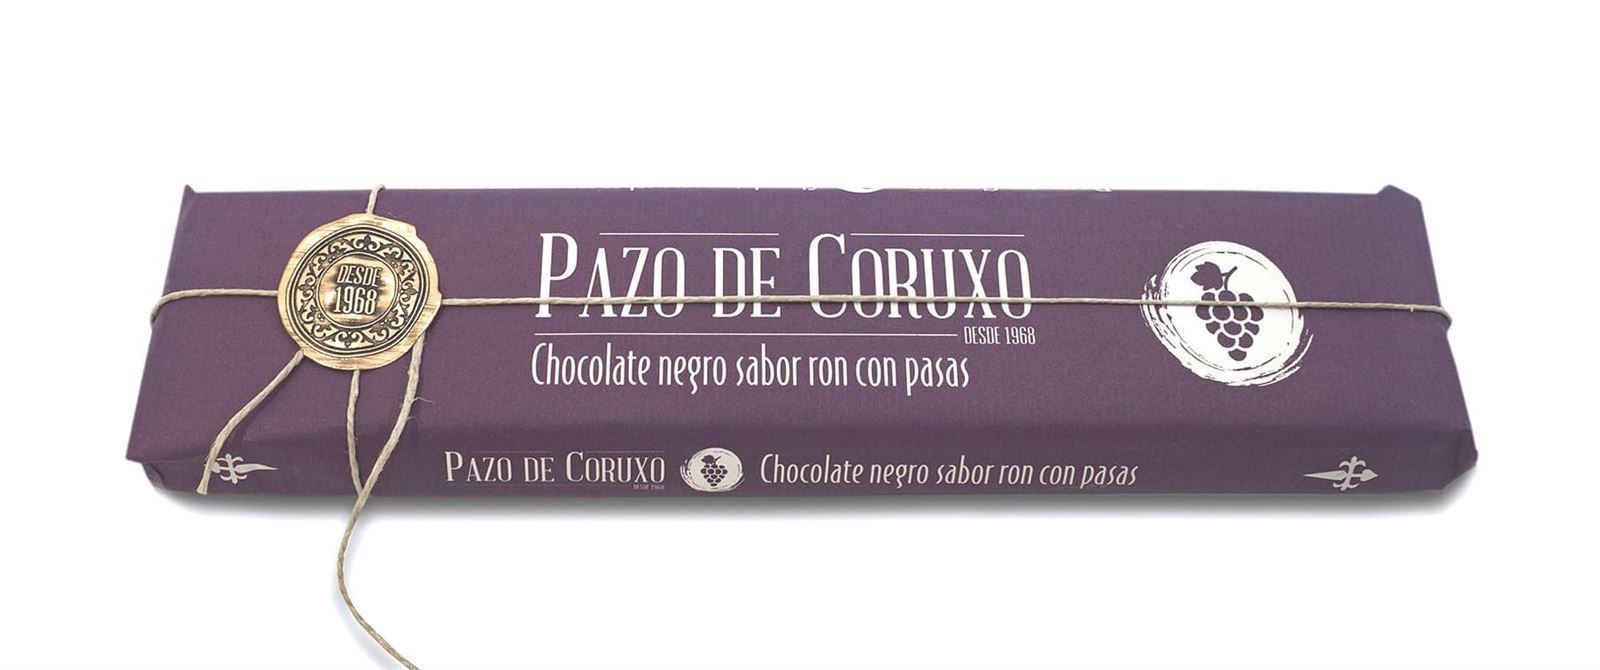 TABLETA CHOCOLATE NEGRO SABOR RON CON PASAS PAZO DE CORUXO 300grs - Imagen 1